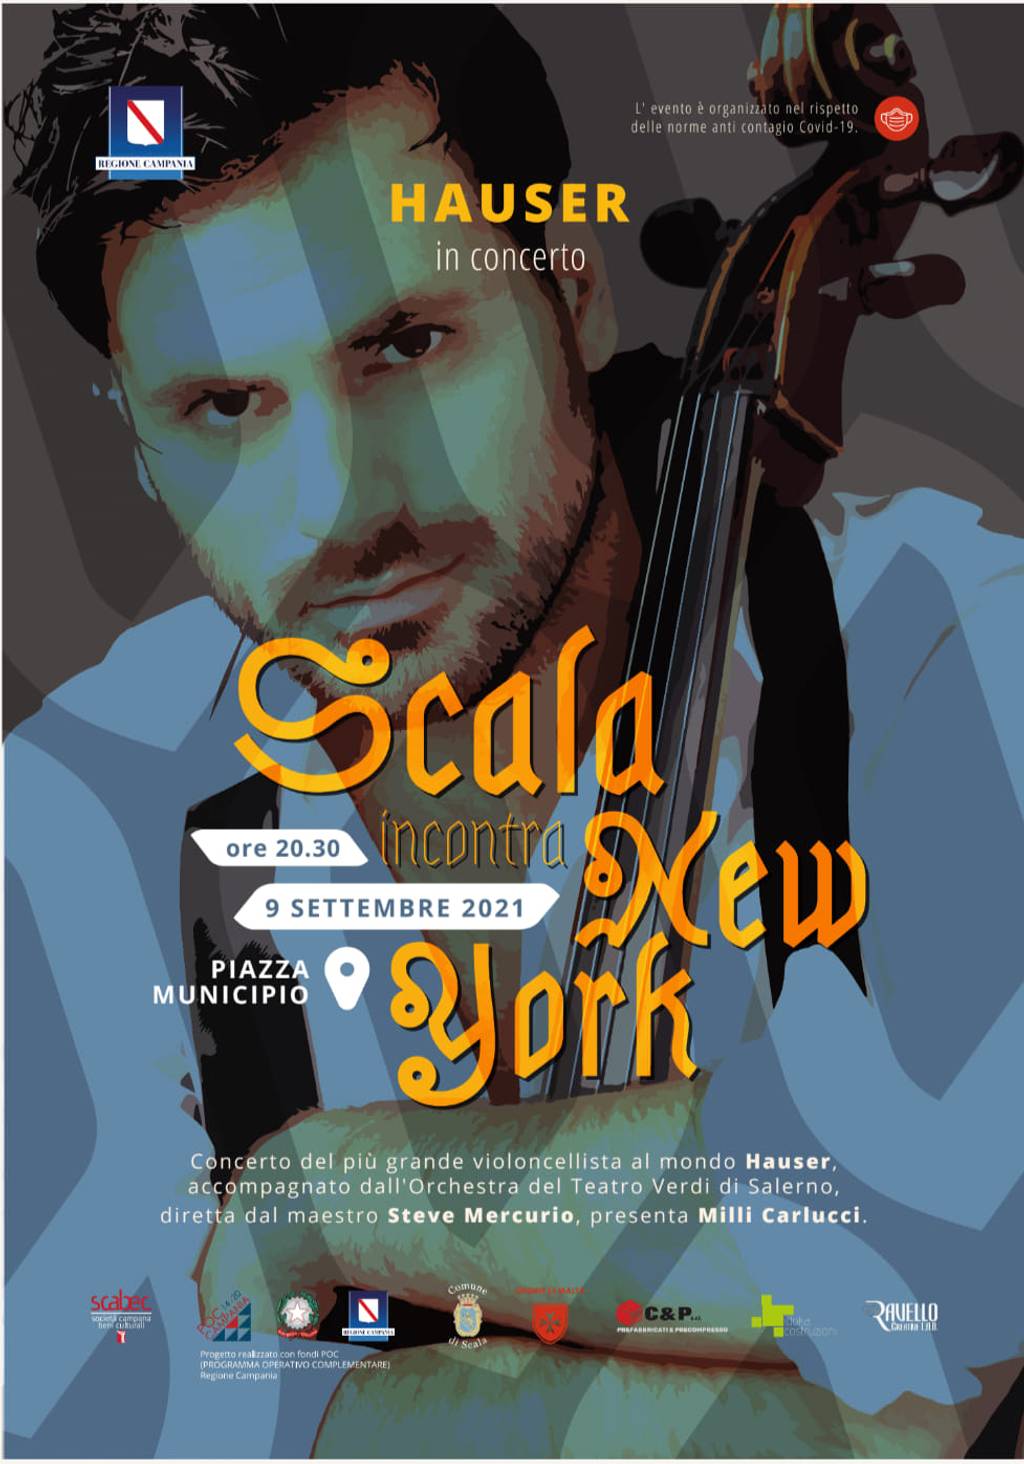 Scala meets New York: Hauser in concert